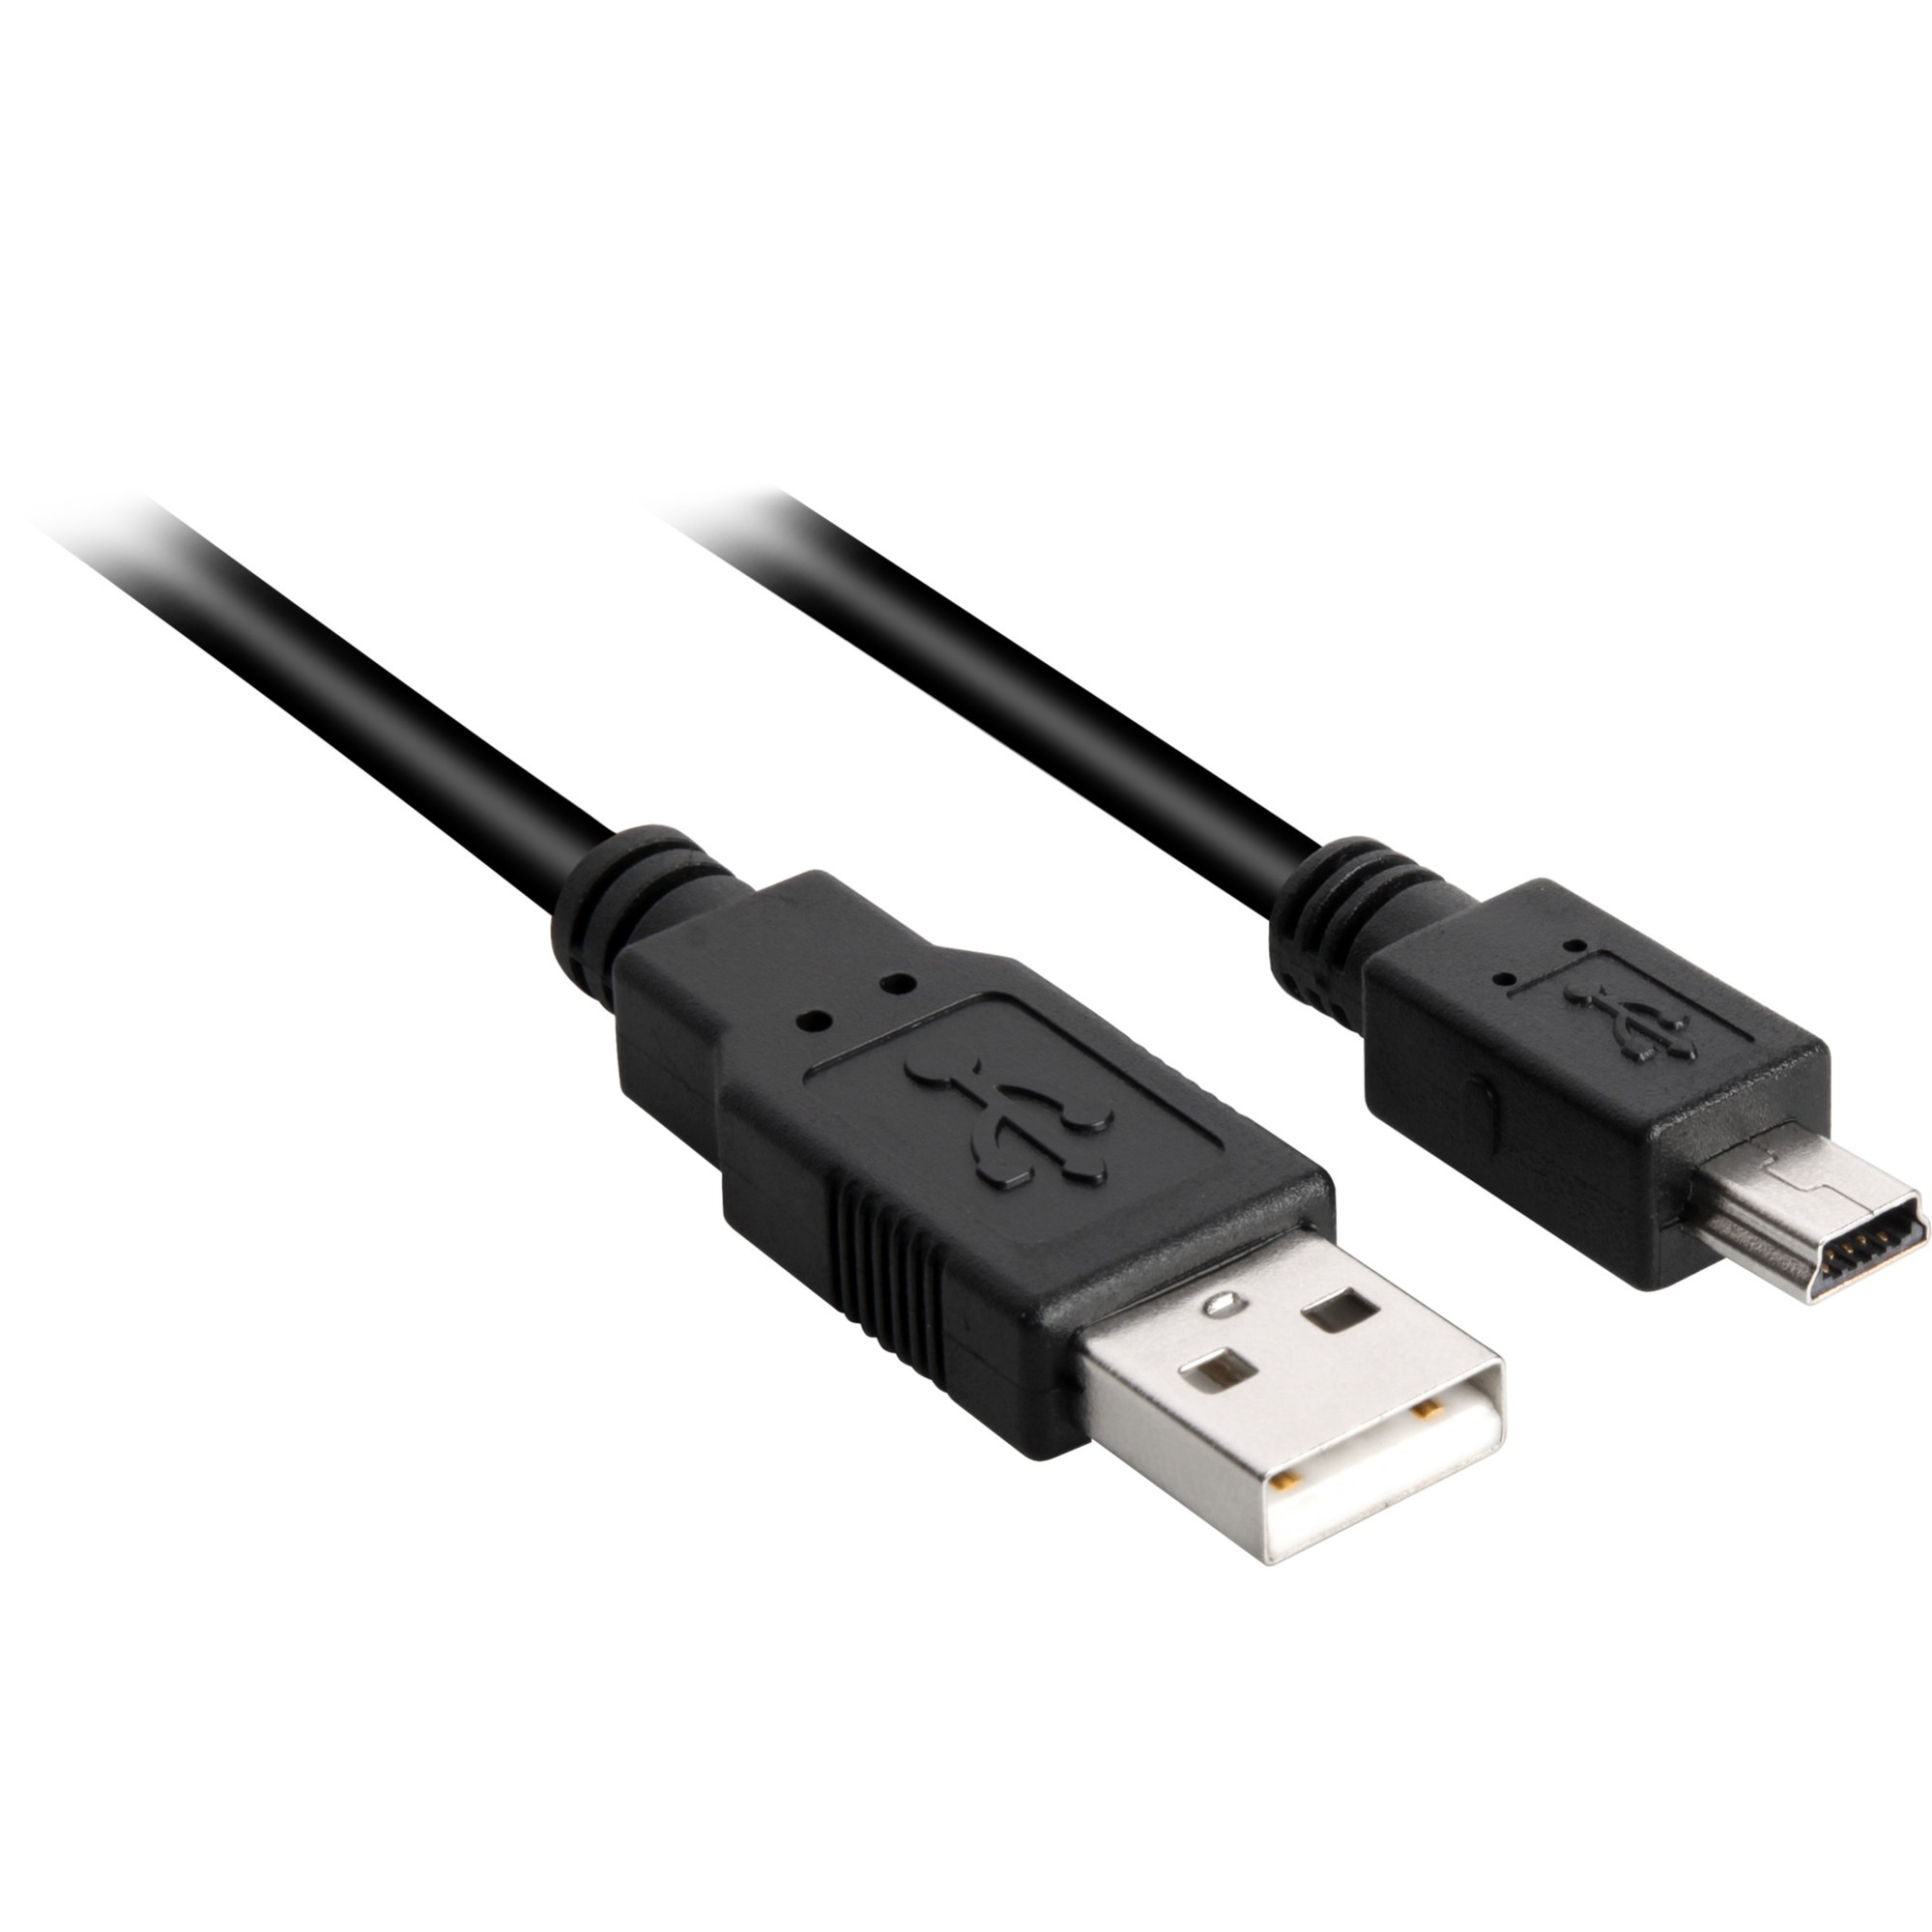 Image of Alternate - Kabel USB 2.0 Stecker A > Stecker B Mini online einkaufen bei Alternate